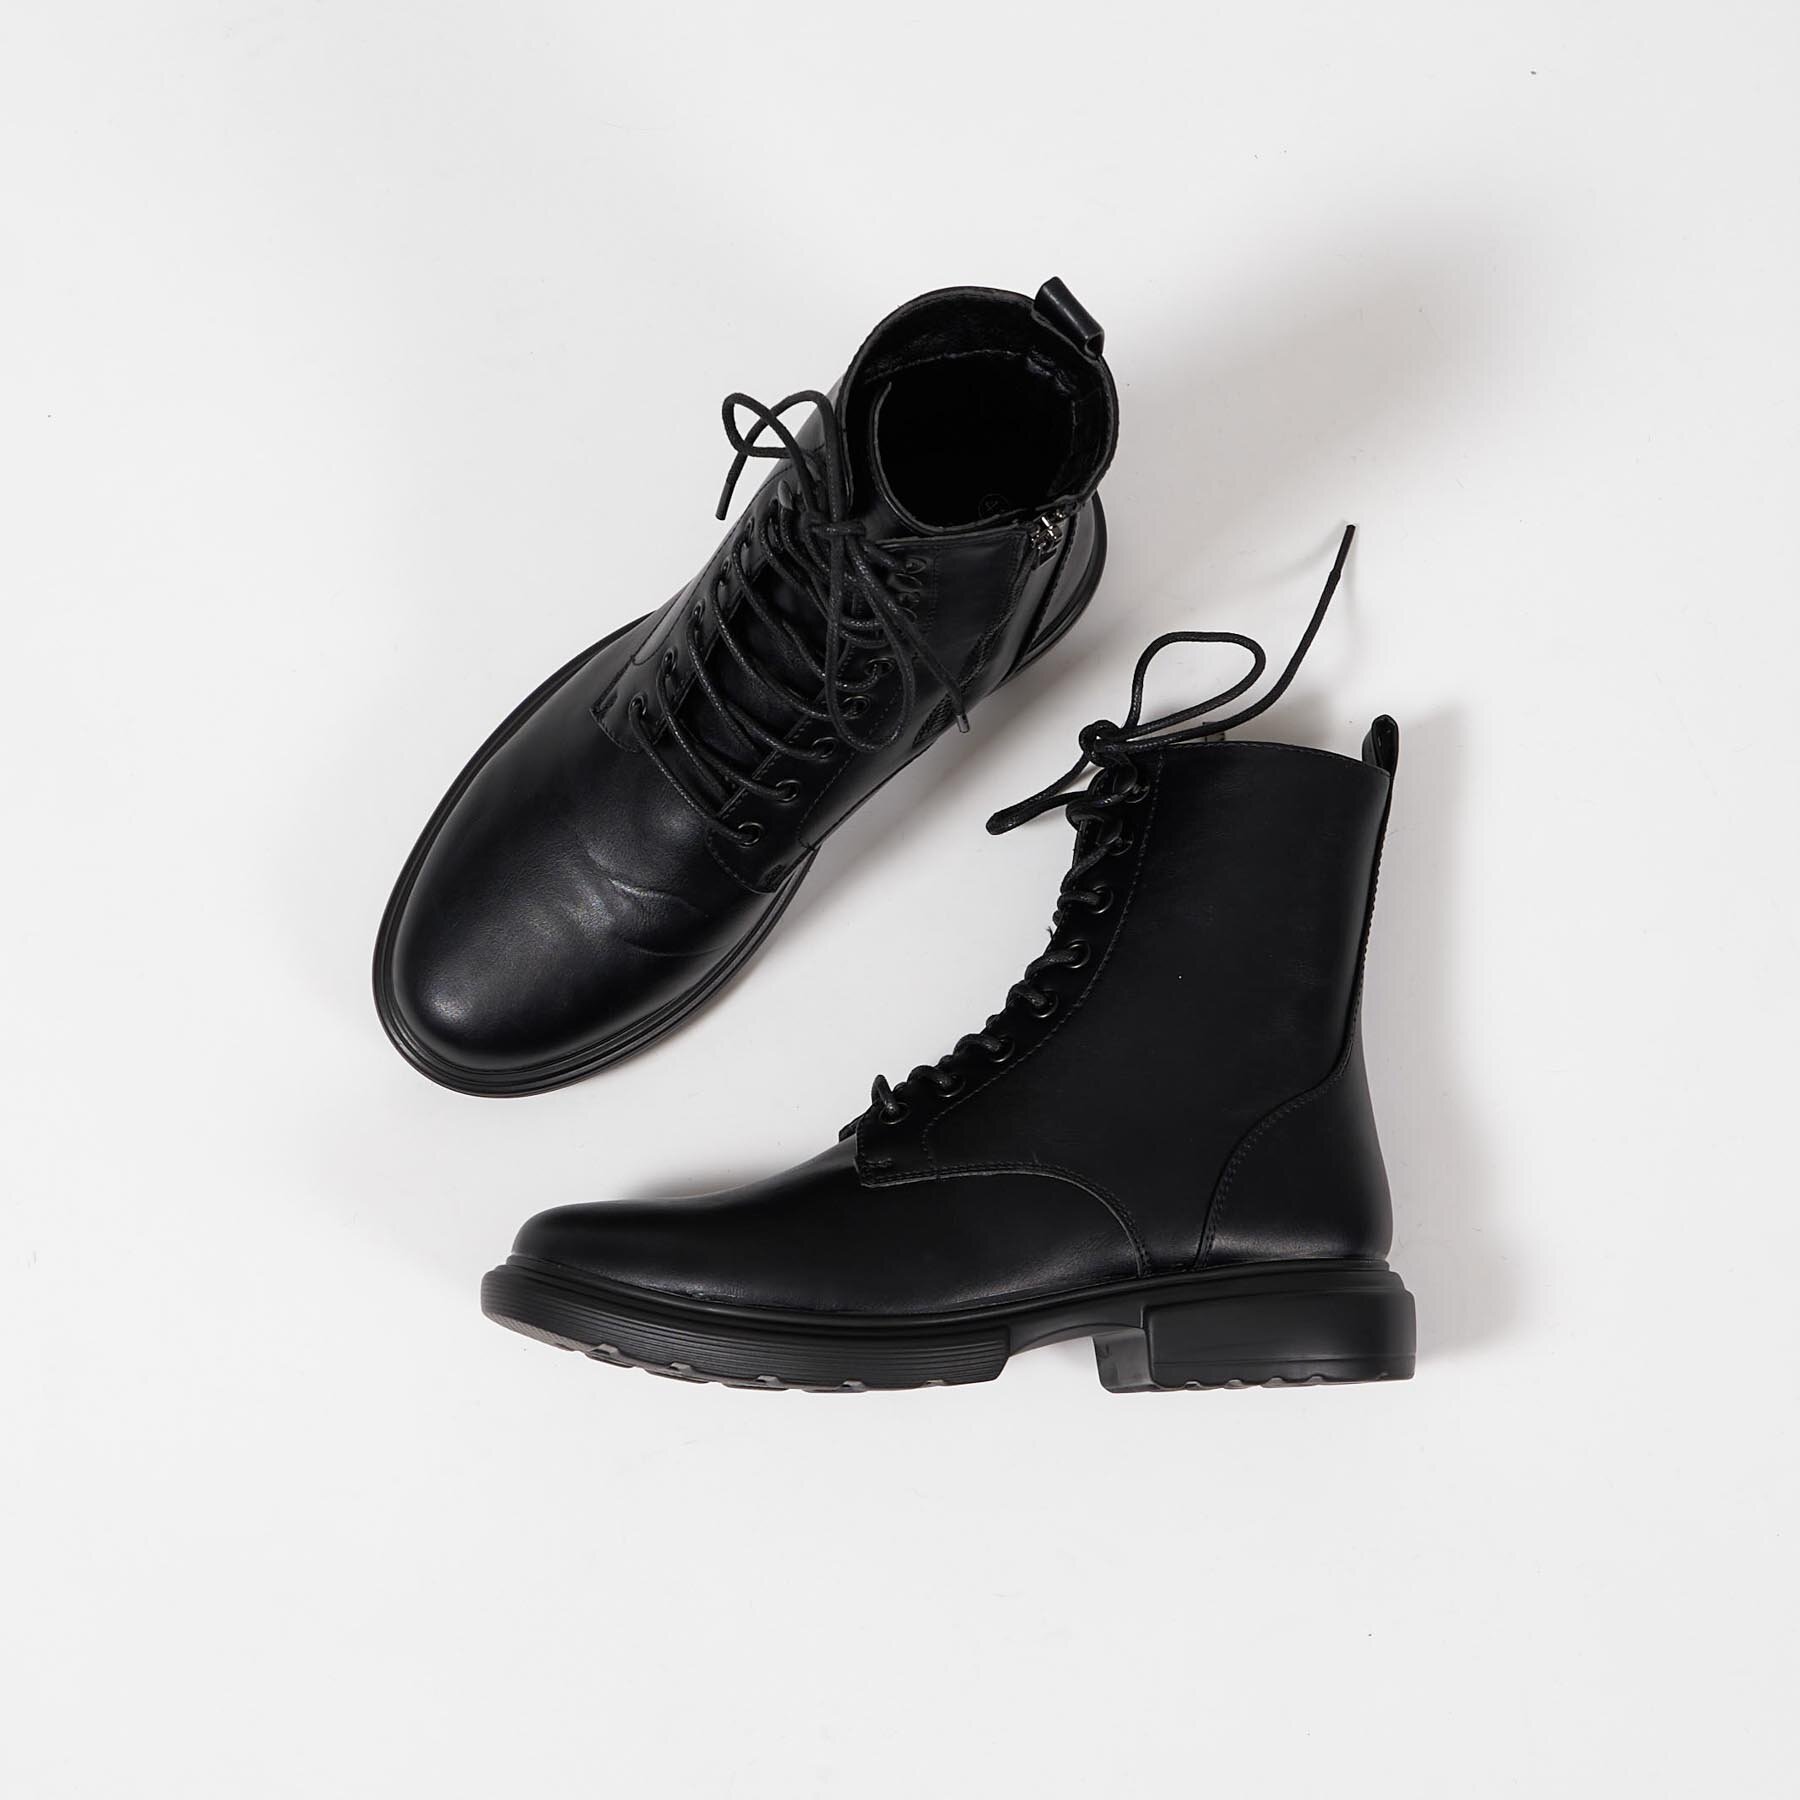 Black rebel - Jeffrey boot - Støvler til herre - Sort - 46